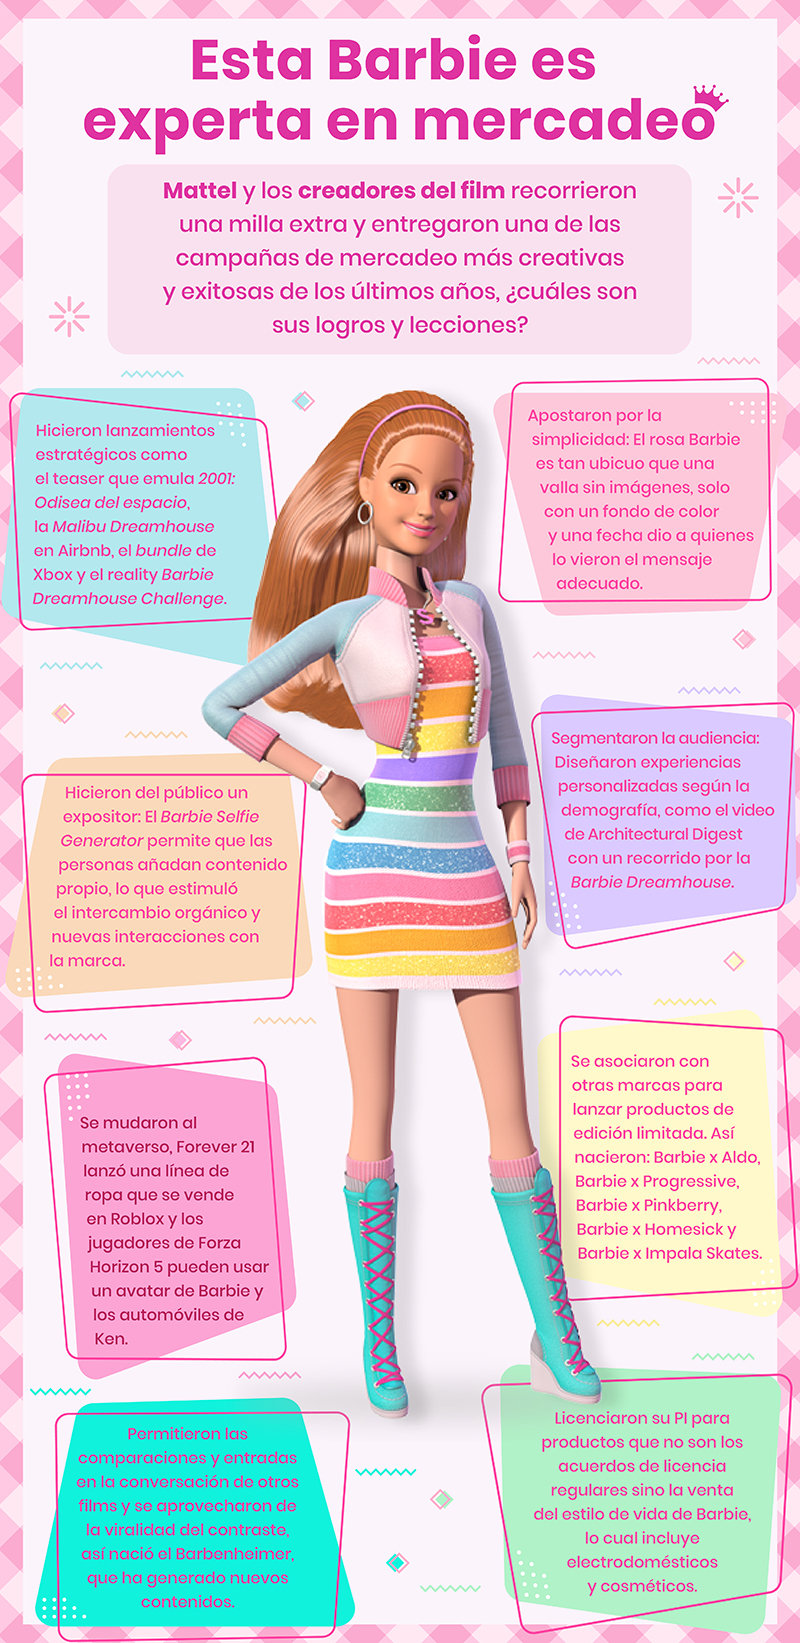 Aciertos del mercadeo de Barbie